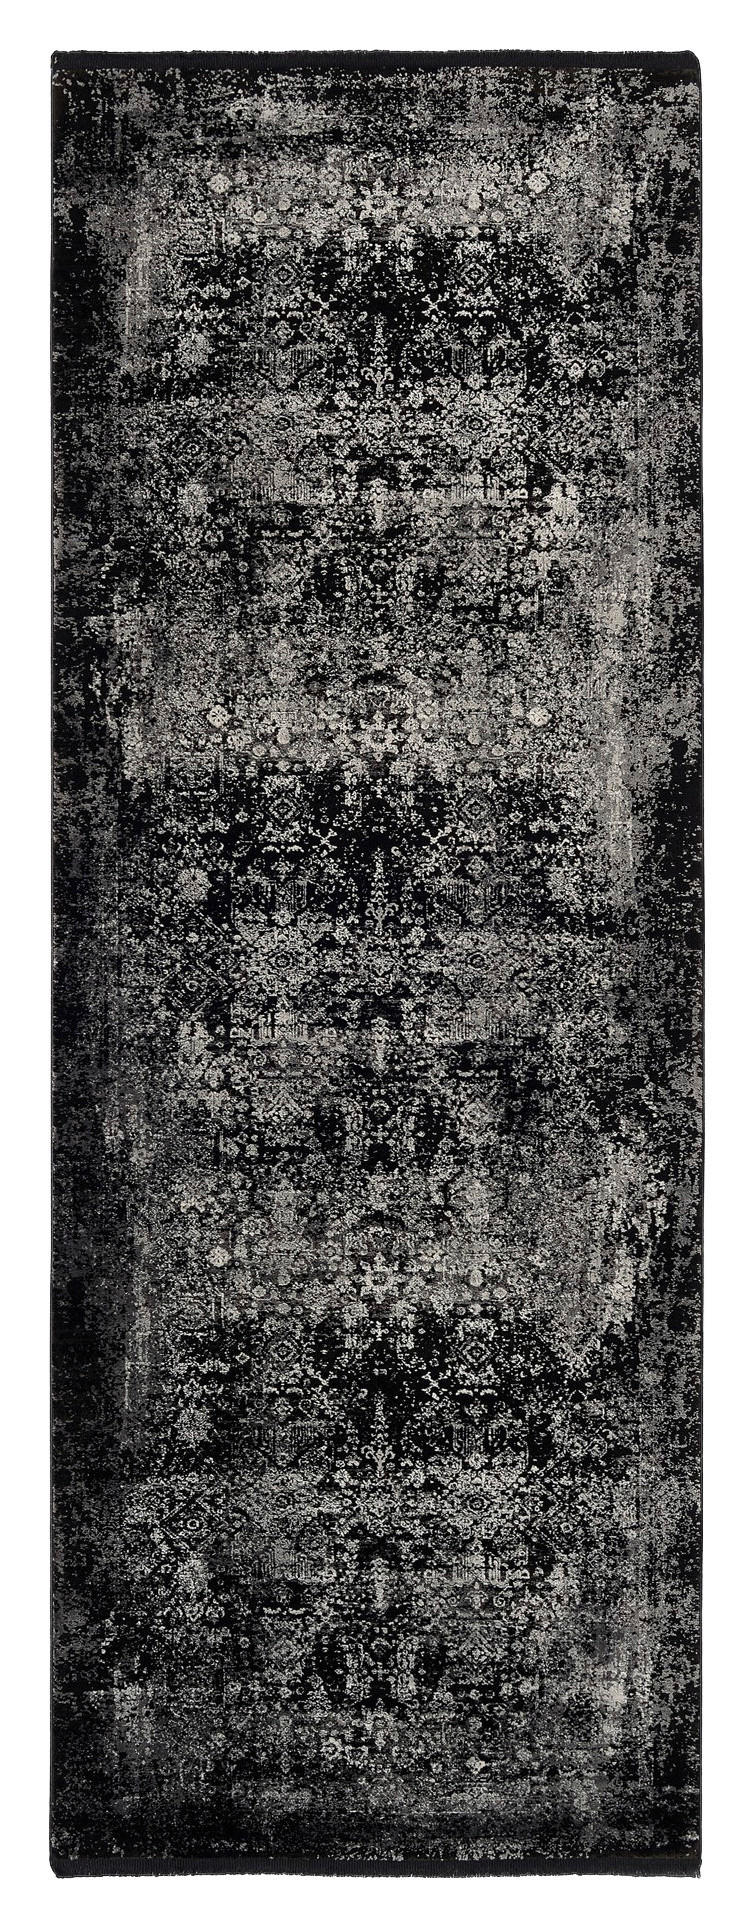 LÄUFER  80/200 cm  Grau, Schwarz  - Schwarz/Grau, Design, Textil (80/200cm) - Dieter Knoll